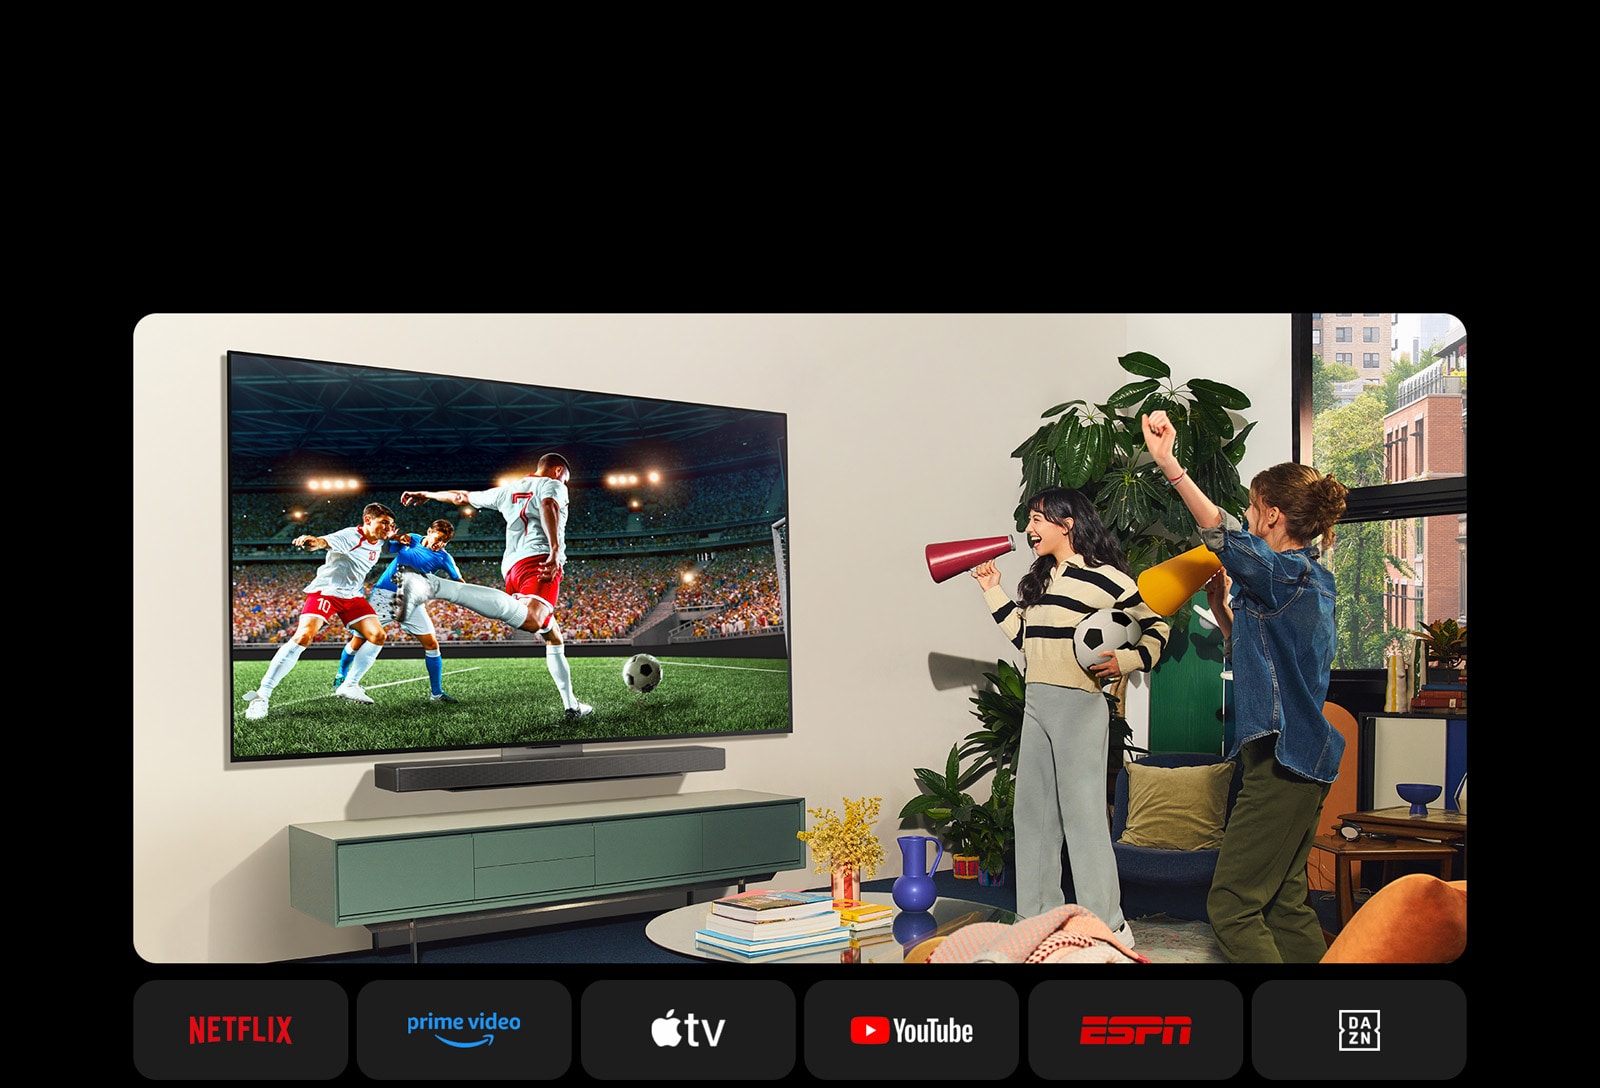 Twee vrouwen kijken naar een voetbalwedstrijd in een gezellige woonruimte. Eén vrouw houdt een voetbal vast en beiden moedigen hun team aan met gele en rode luidsprekers. De volgende logo’s worden hieronder weergegeven. Netflix, Amazon Prime Video, Apple TV, Youtube, ESPN, en DAZN.